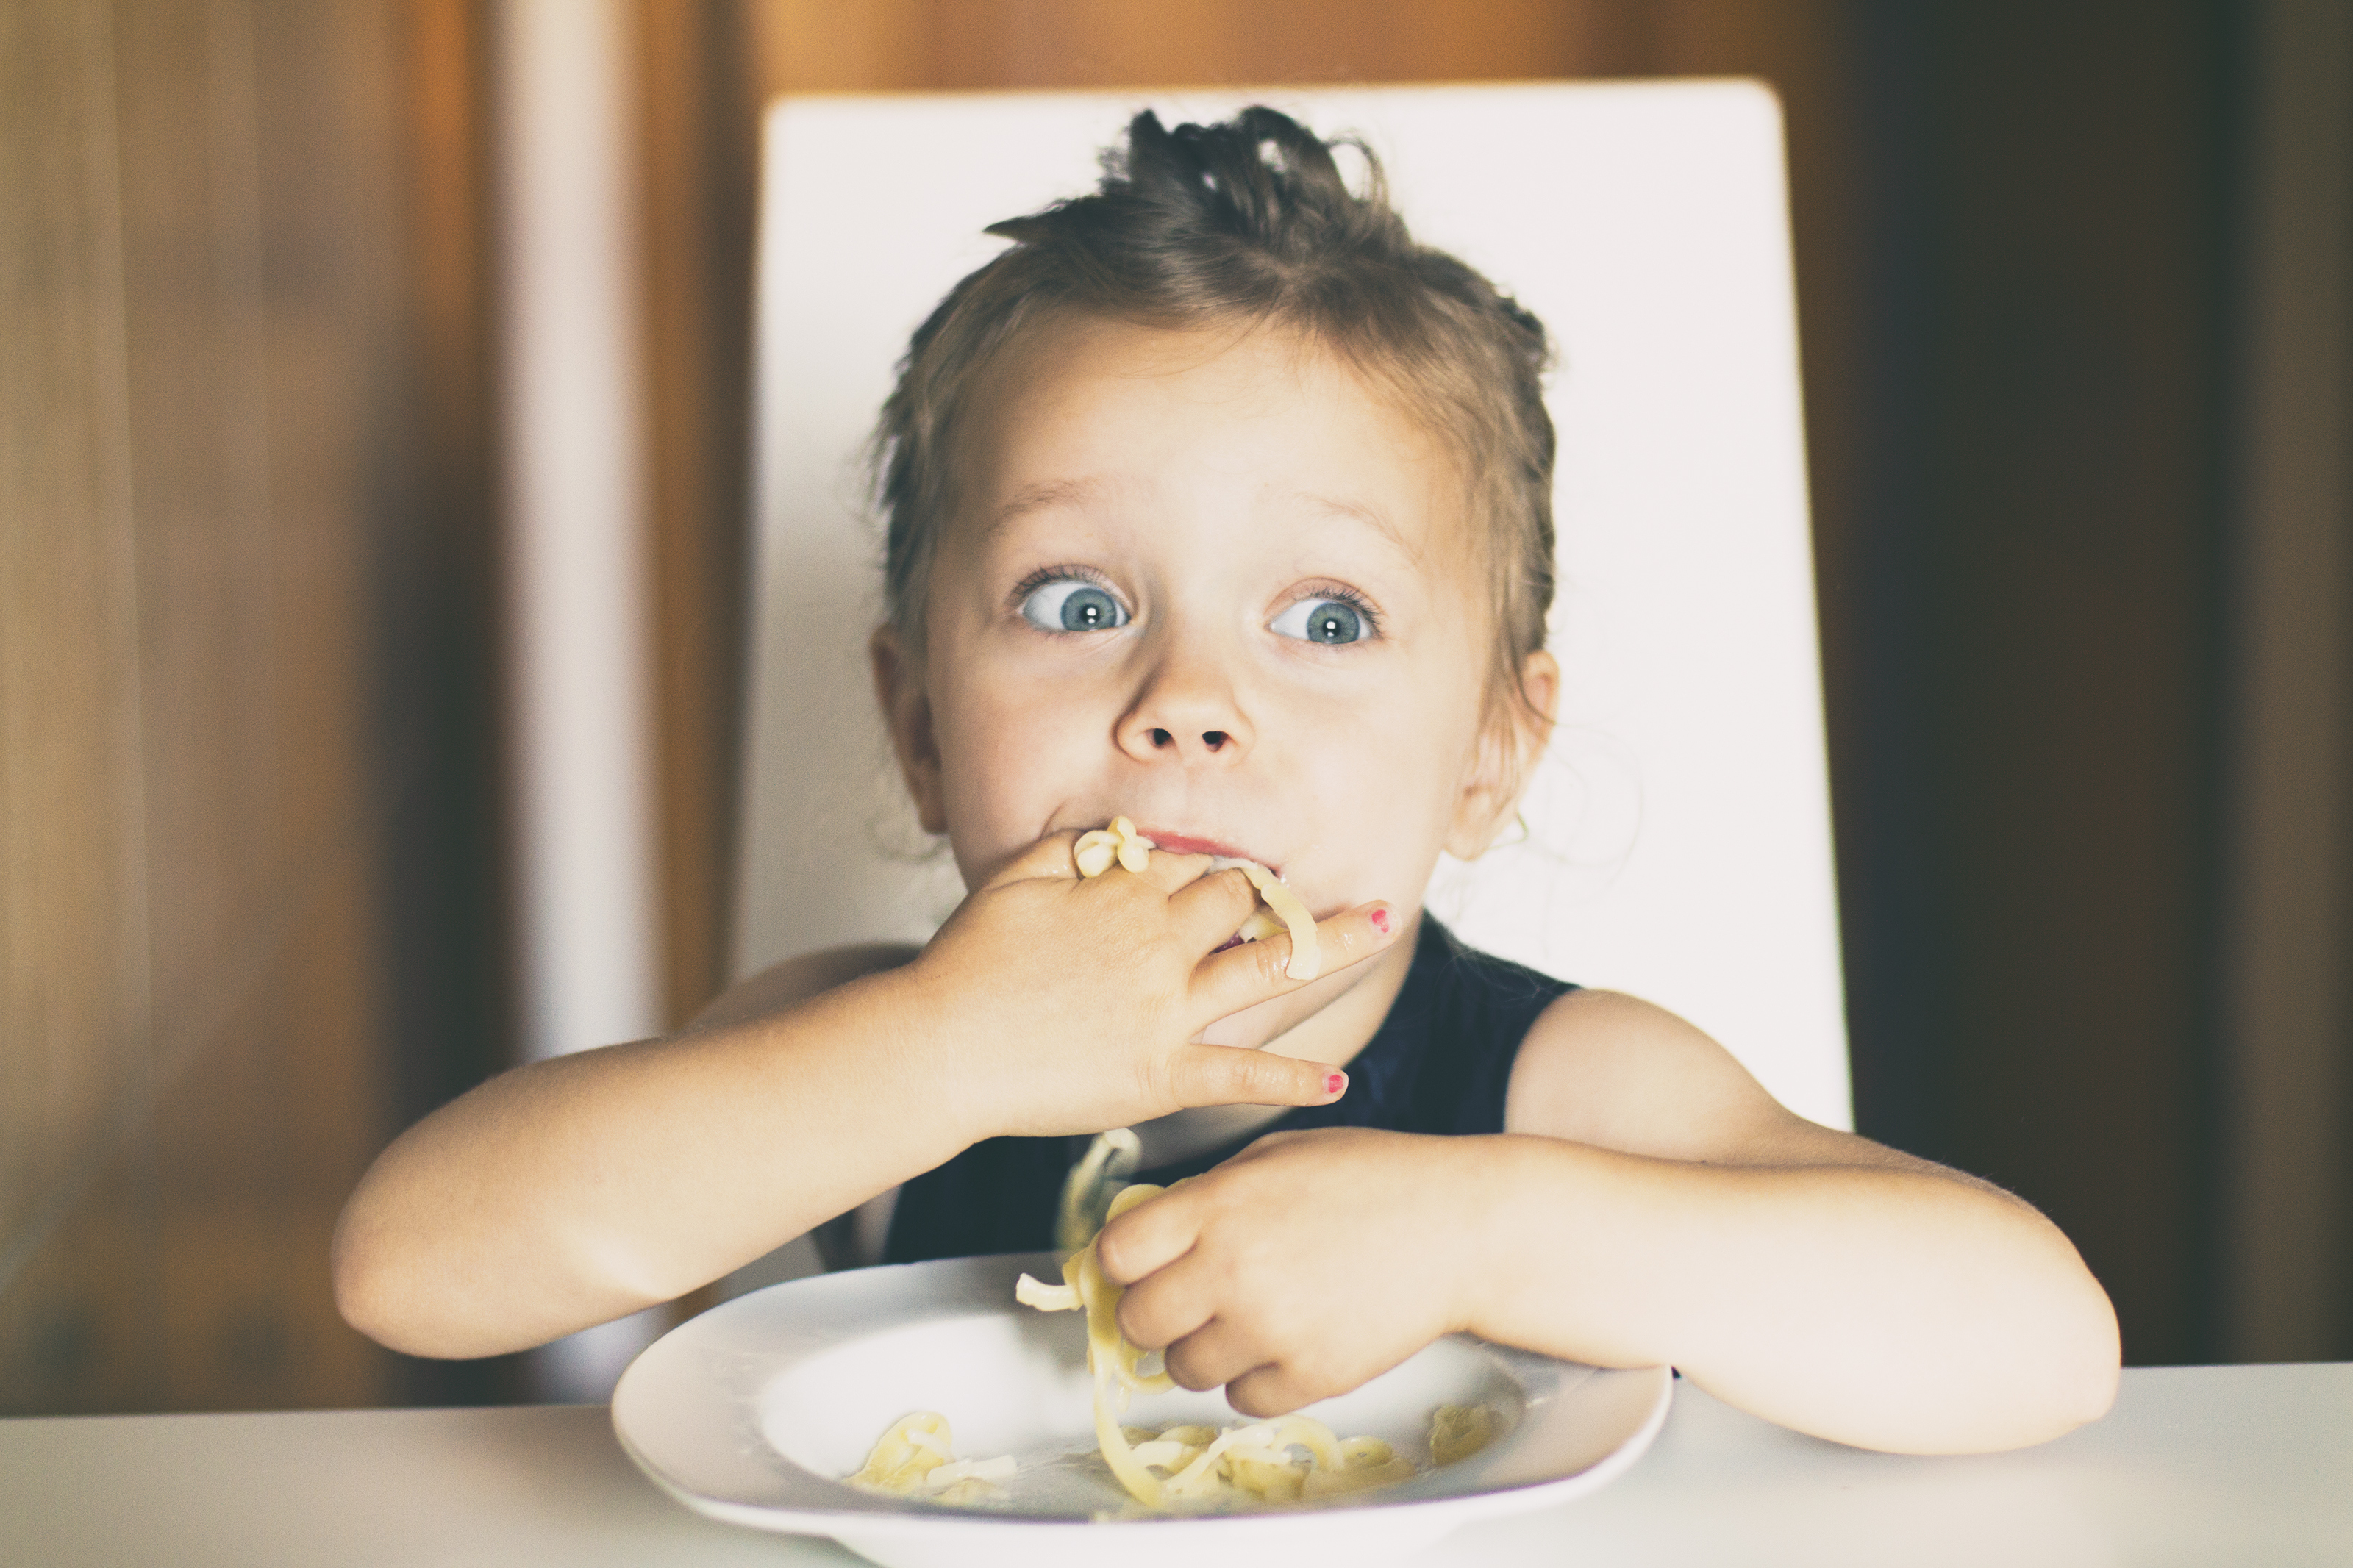 Worst food for children: ये 5 फूड्स बच्चों की ग्रोथ रोककर इम्यूनिटी कर देते हैं वीक, लिवर खराब होने का भी होता है खतरा